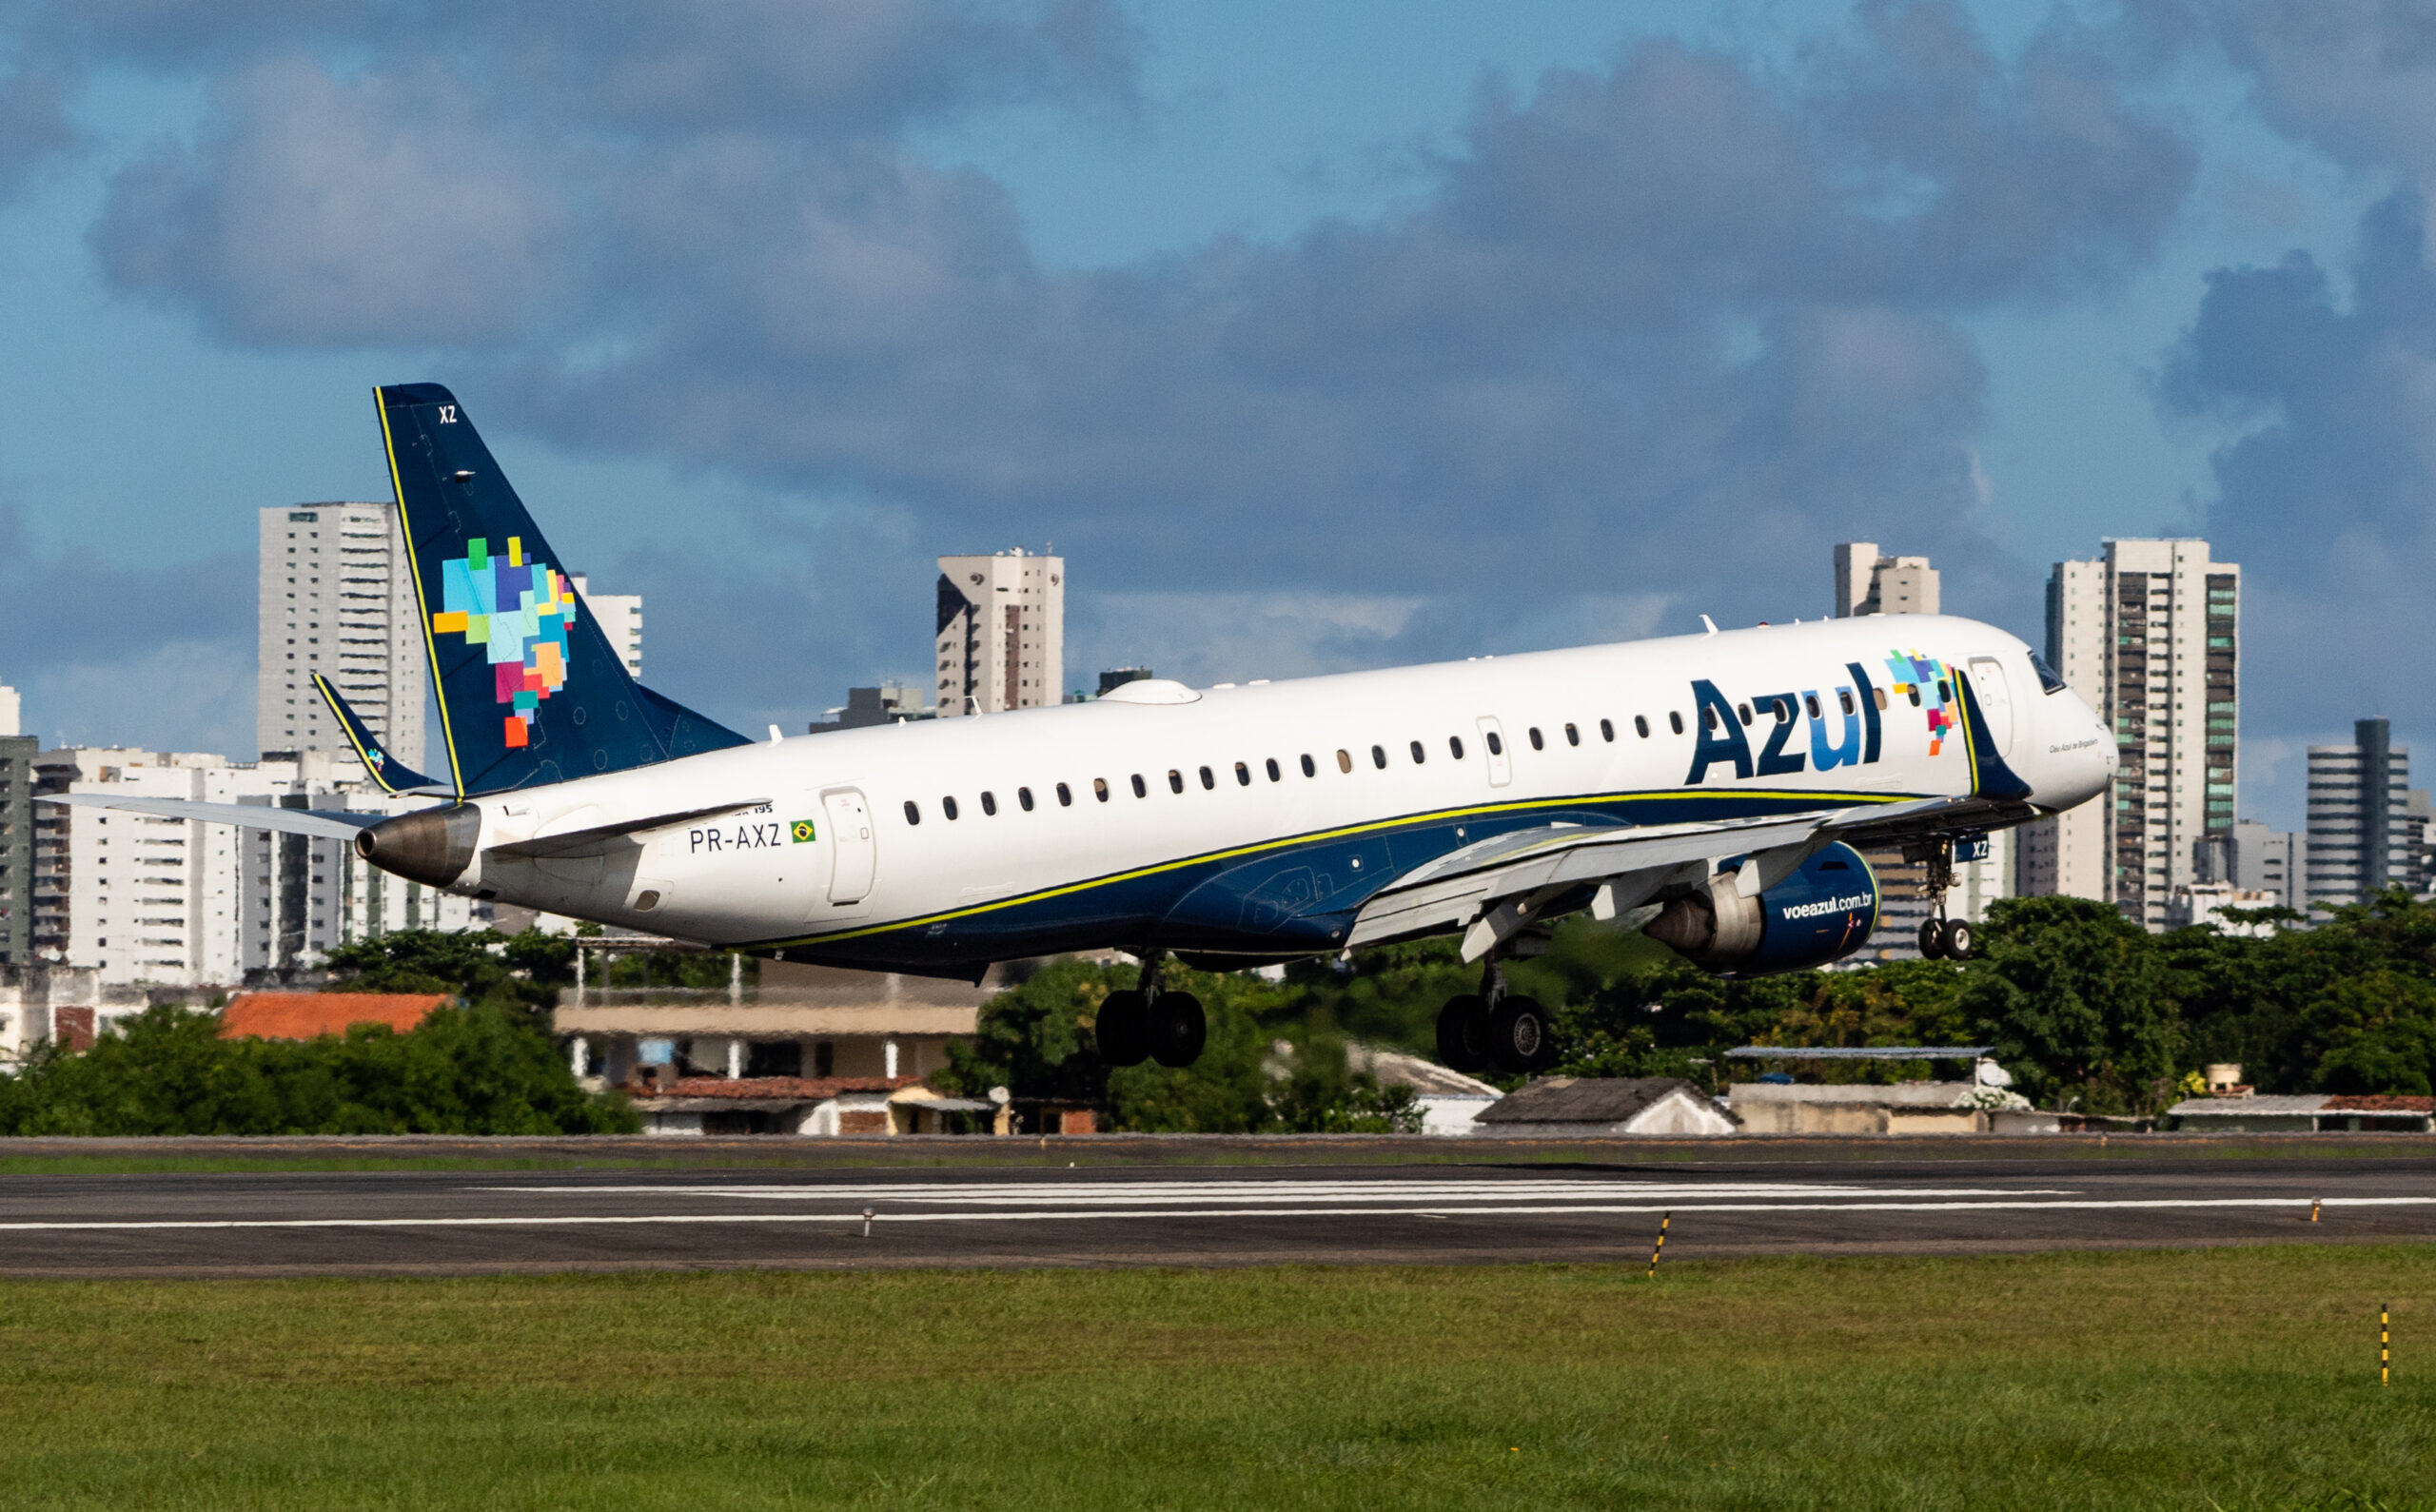 PR-AXZ - Embraer 195 - Azul Linhas Aéreas - Blog do Spotter